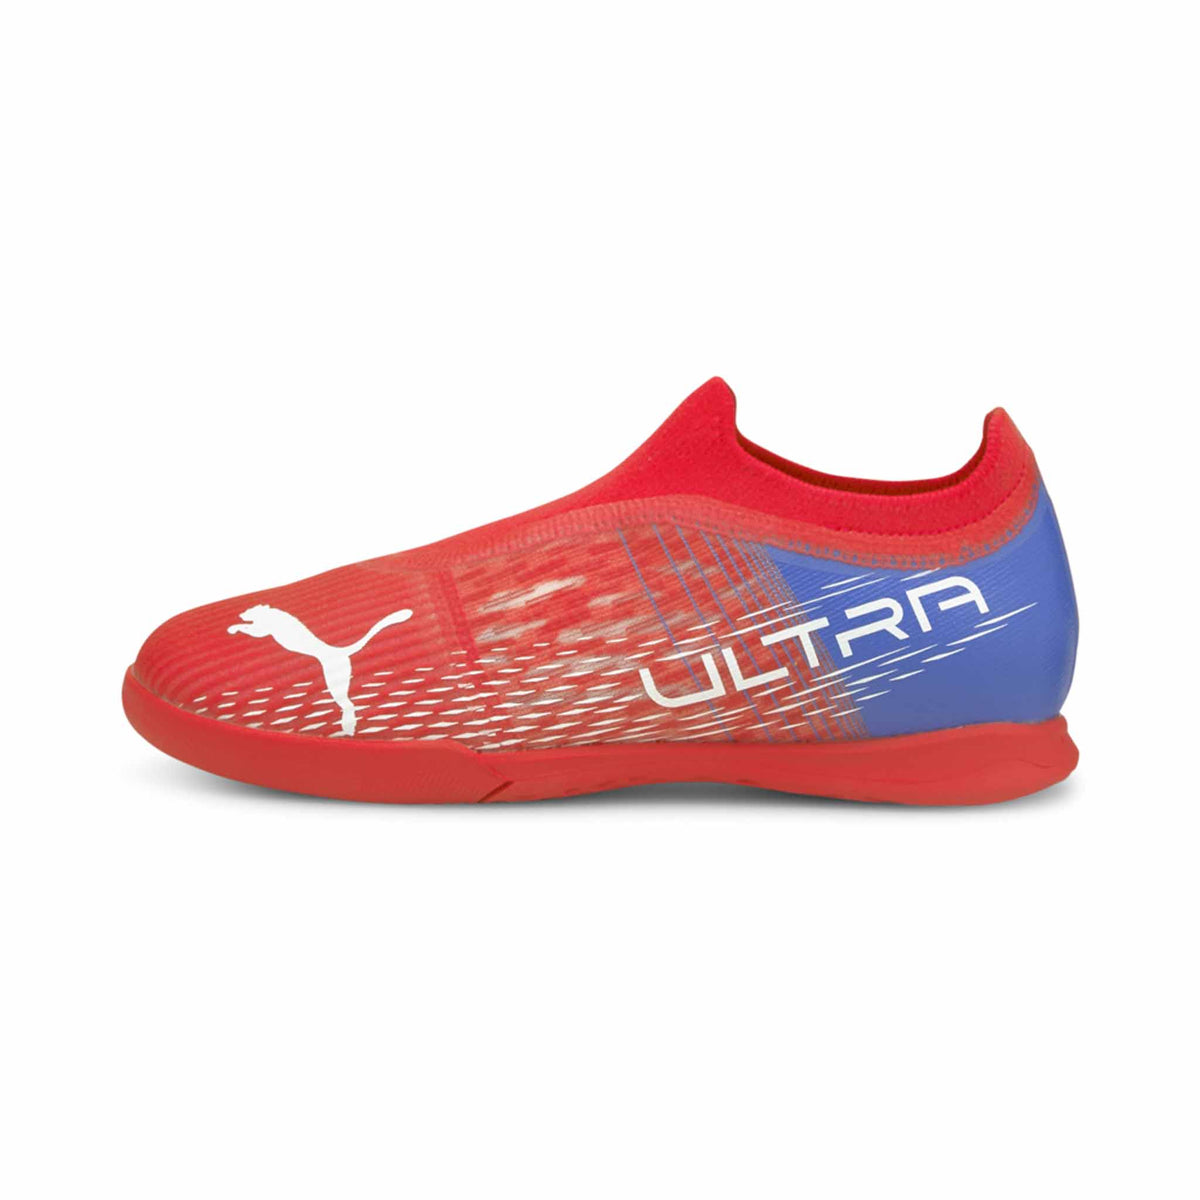 Puma Ultra 3.3 IT junior chaussures de soccer intérieur enfant 